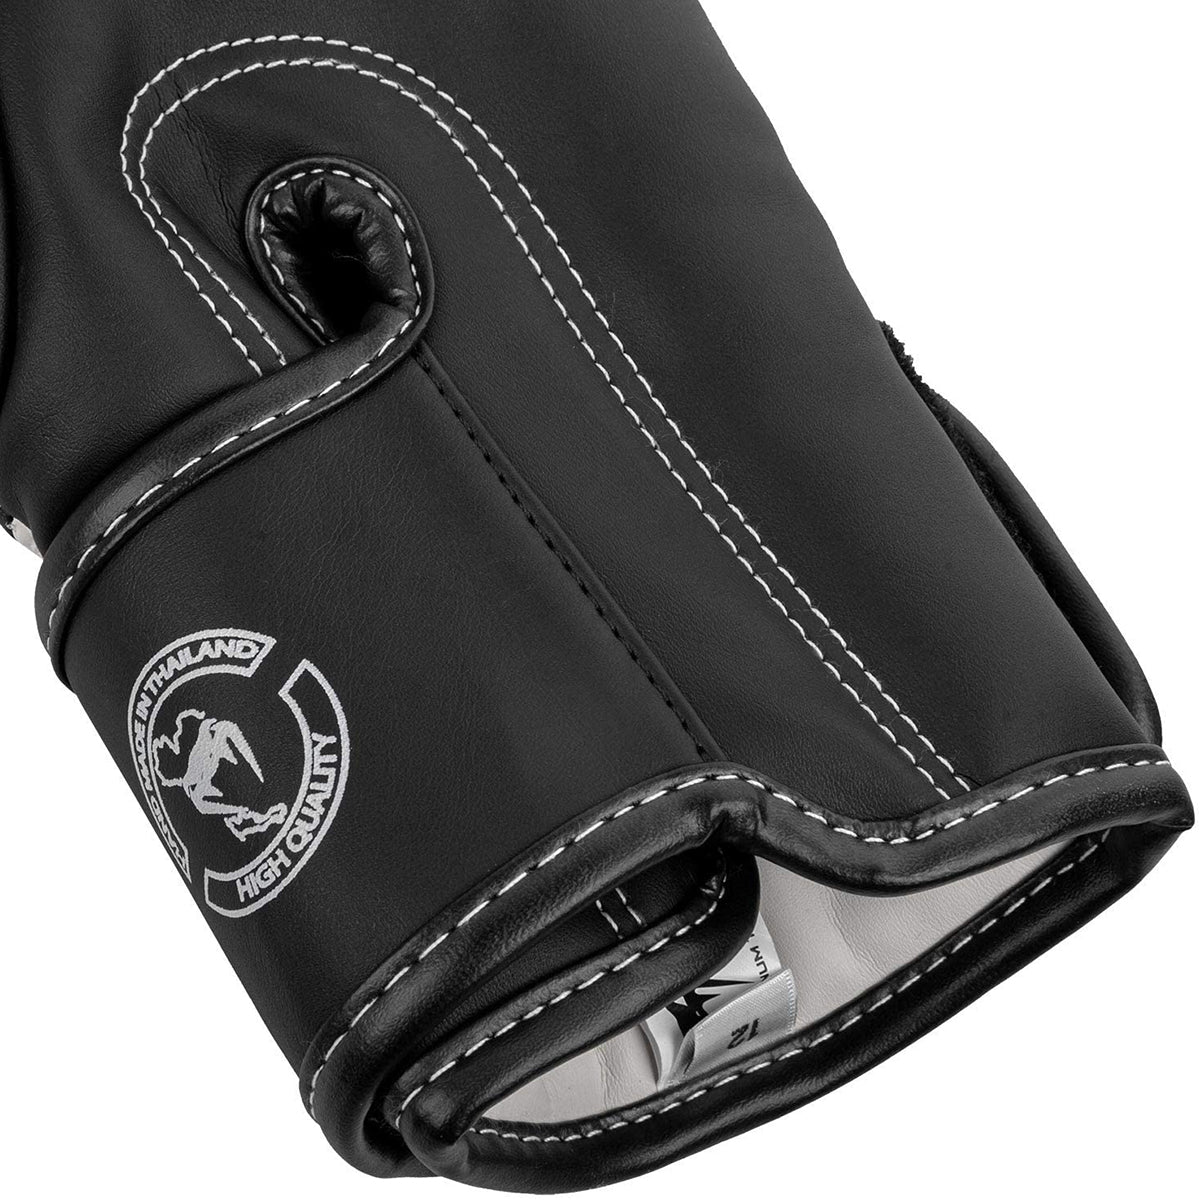 Venum Elite Hook and Loop Training Boxing Gloves - White/Camo Venum